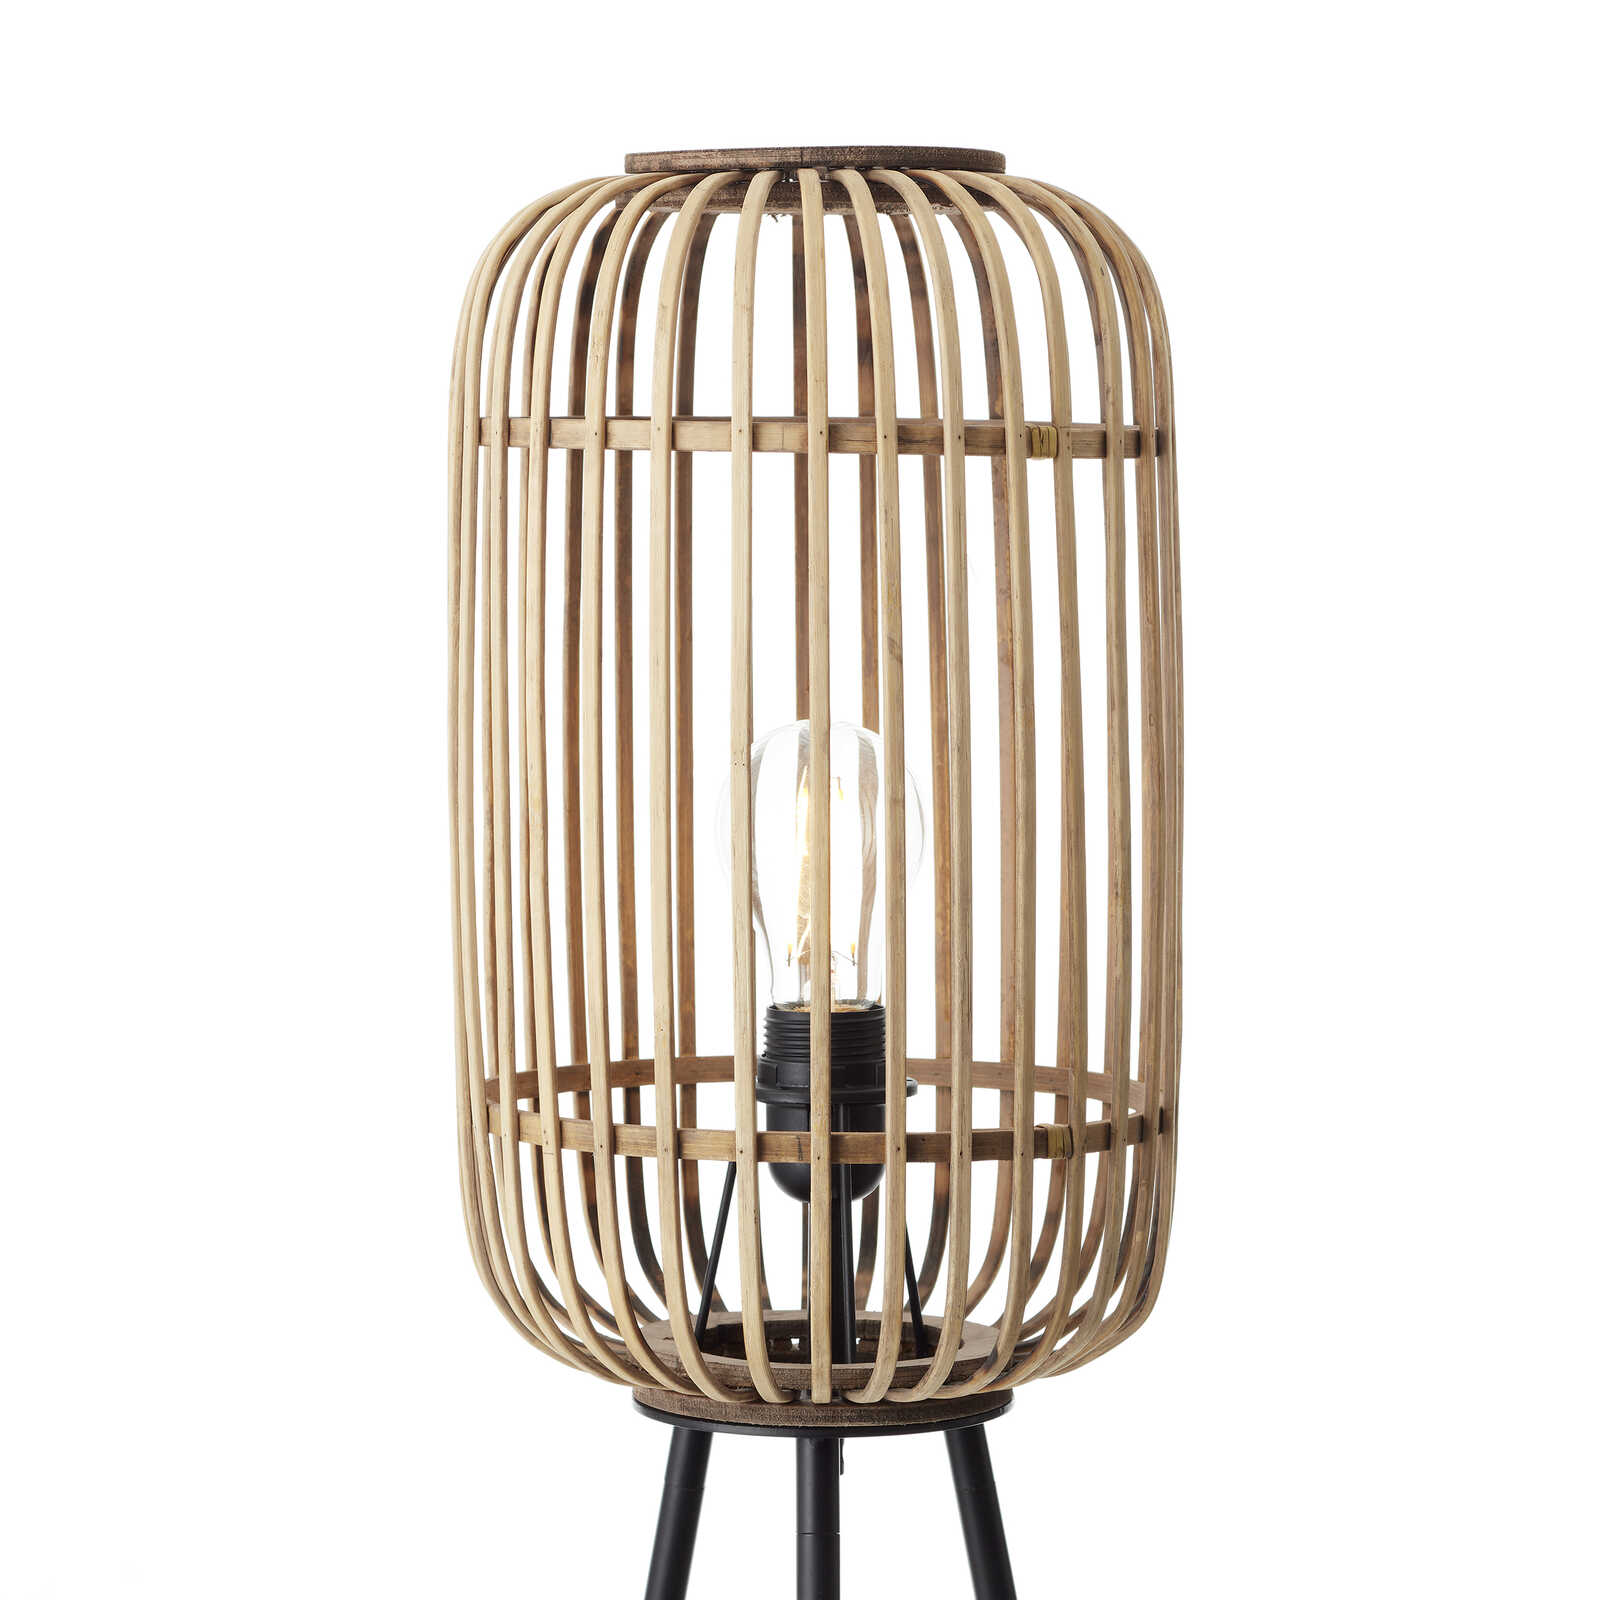             Bamboe vloerlamp - Willi 8 - Bruin
        